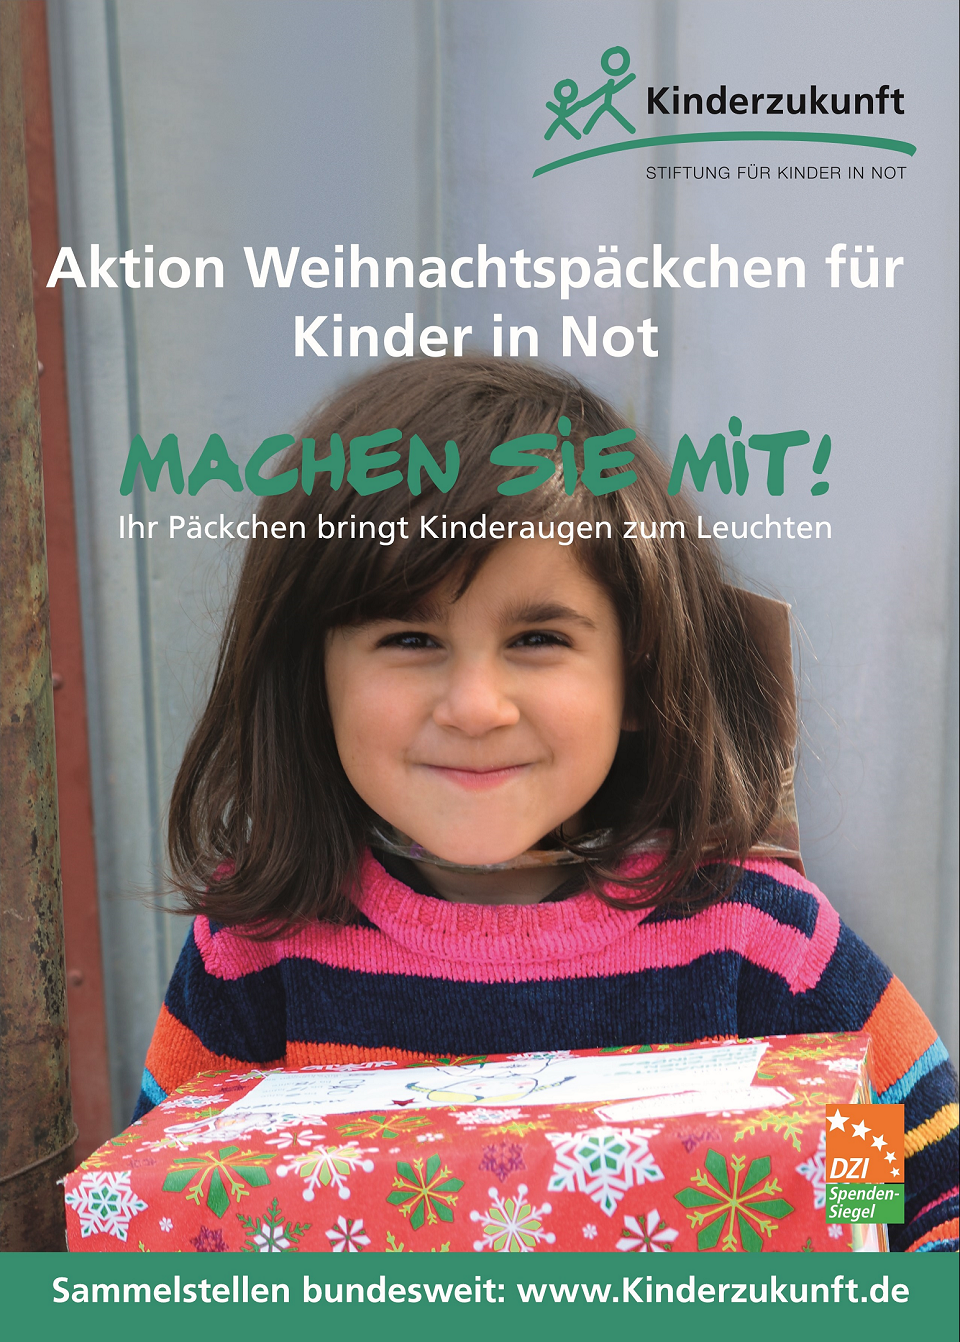 Werbeplakat der Stiftung Kinderzukunft